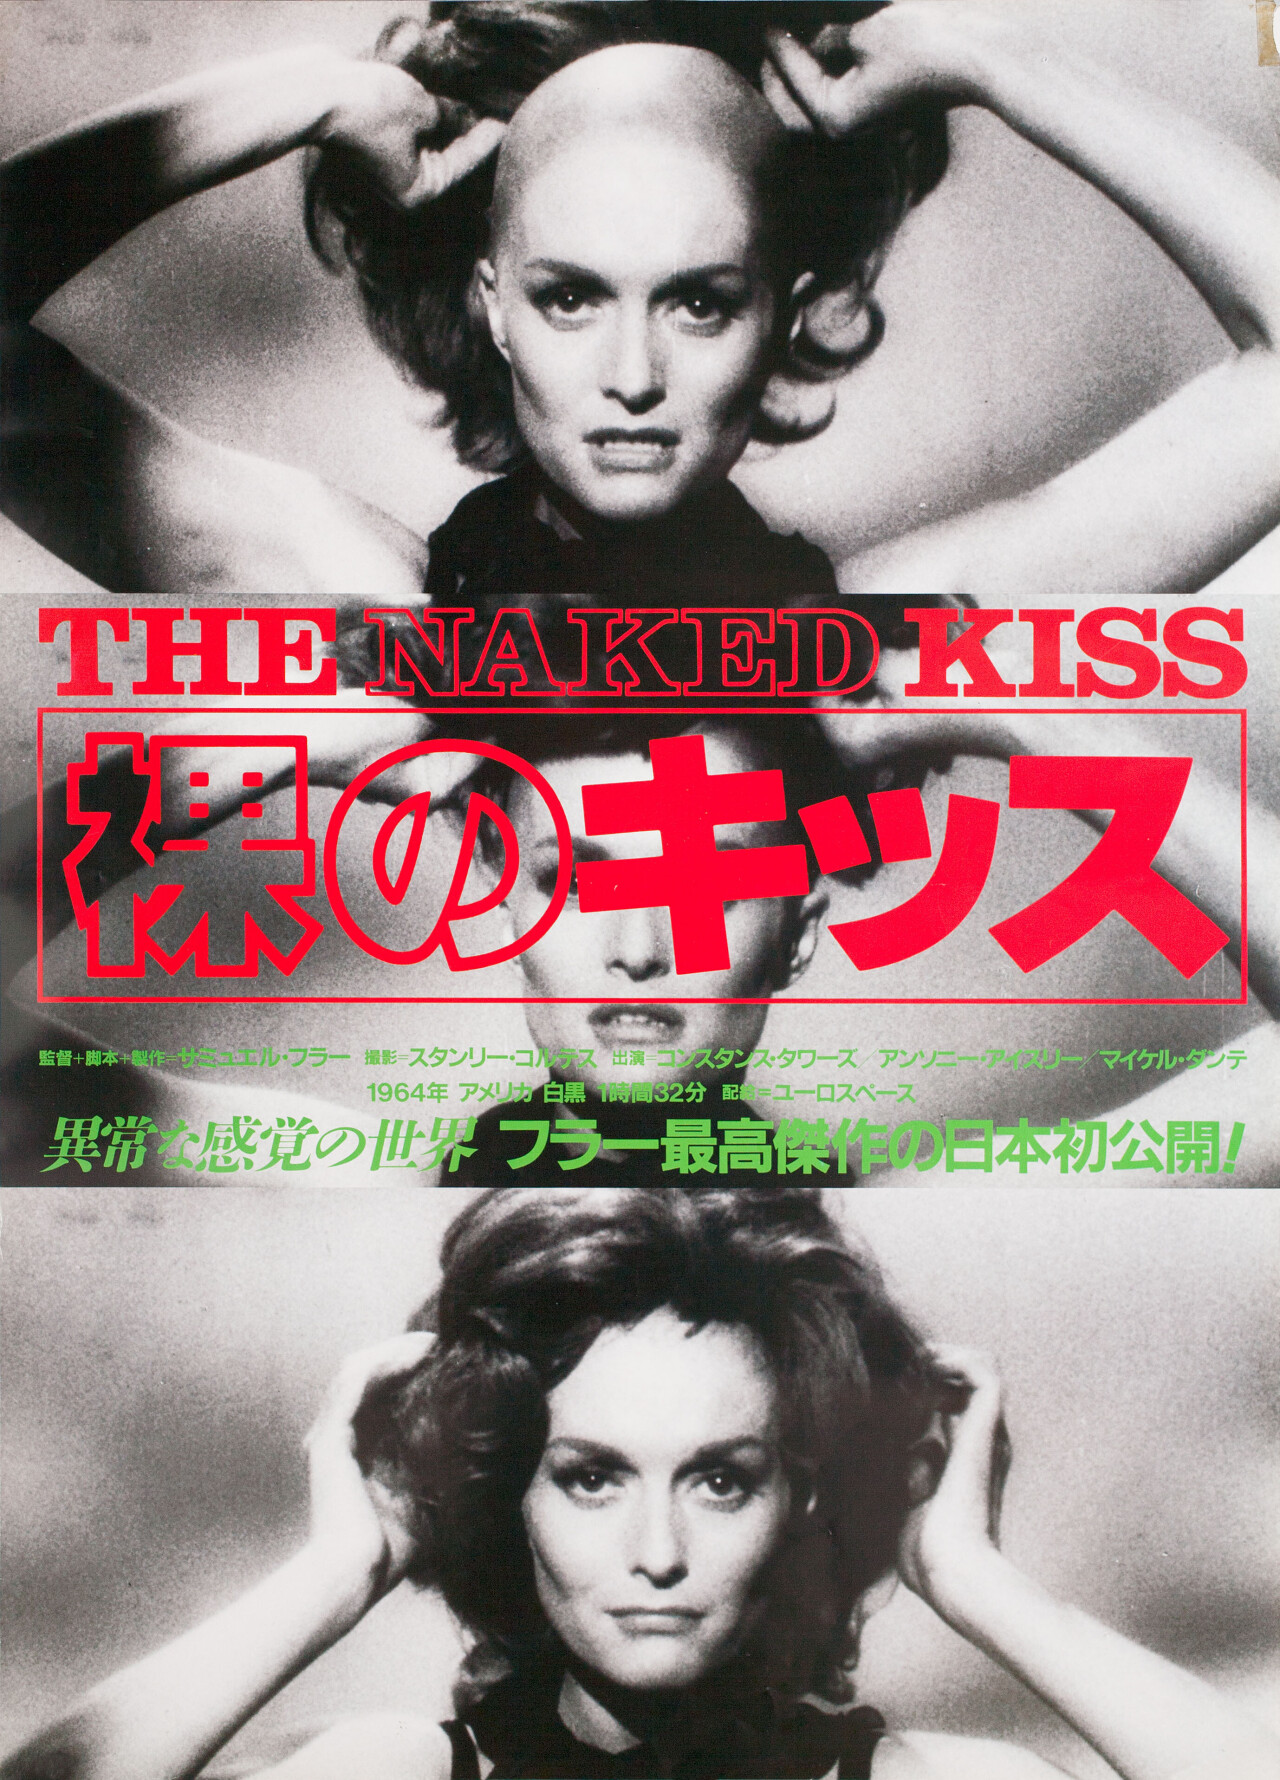 Обнаженный поцелуй (The Naked Kiss, 1964), режиссёр Сэмюэл Фуллер, японский постер к фильму (графический дизайн, 1980 год)